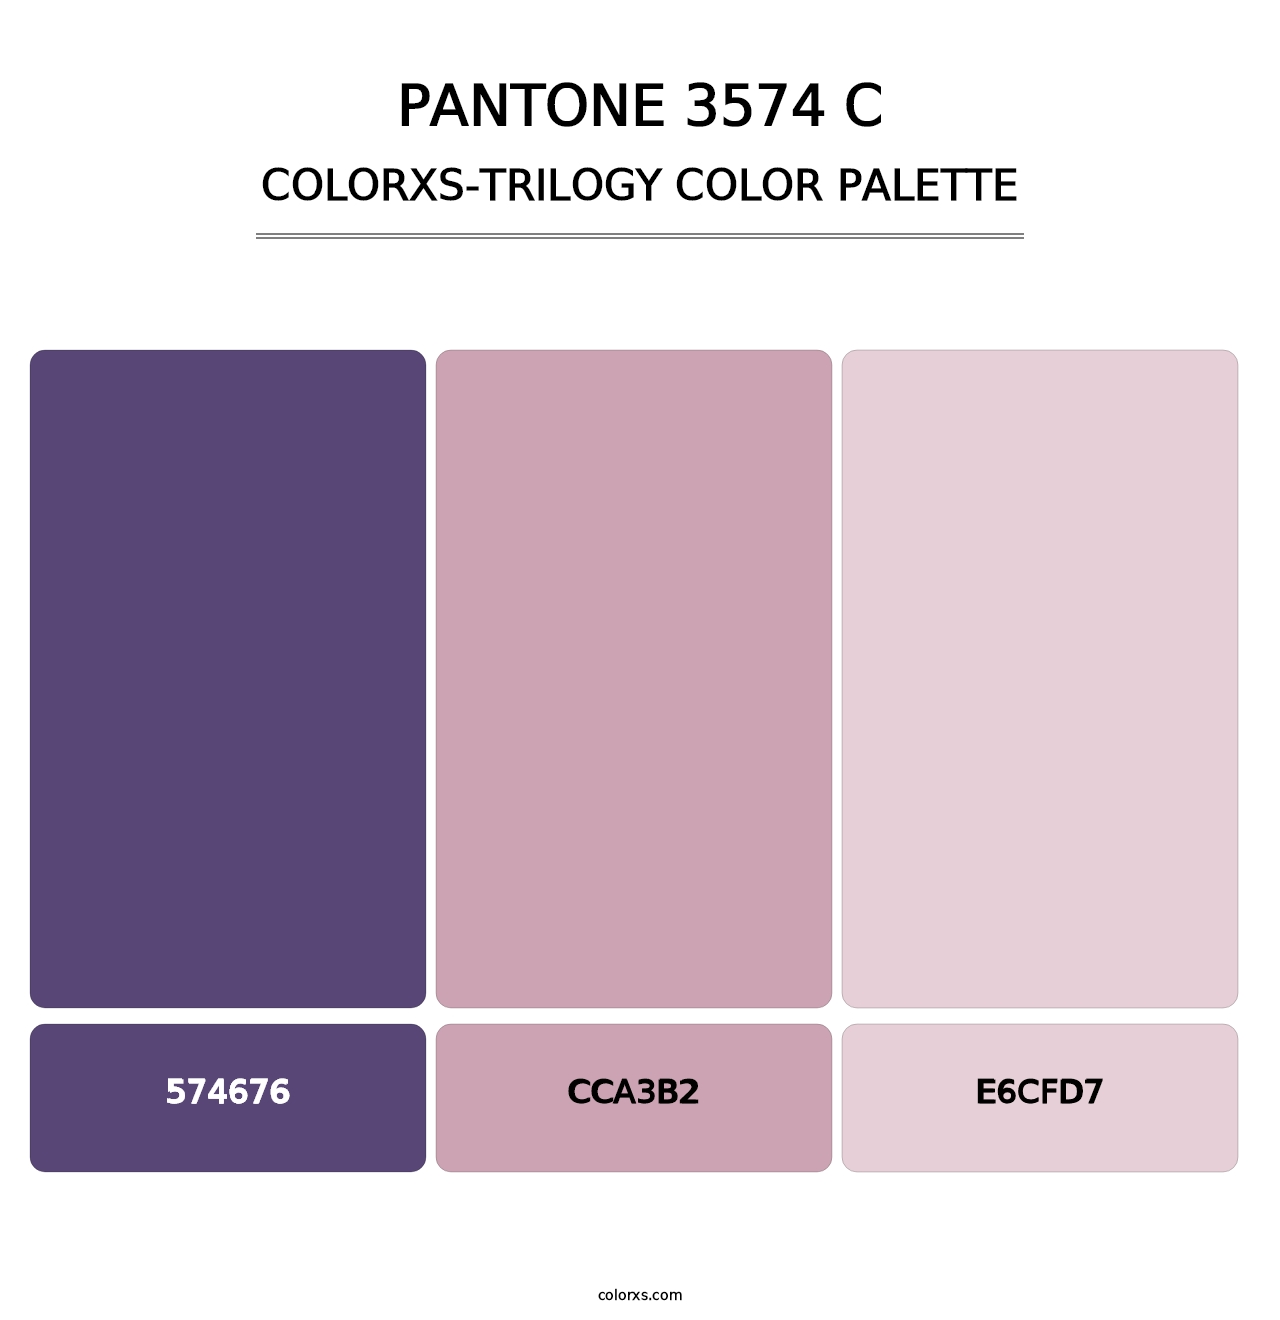 PANTONE 3574 C - Colorxs Trilogy Palette